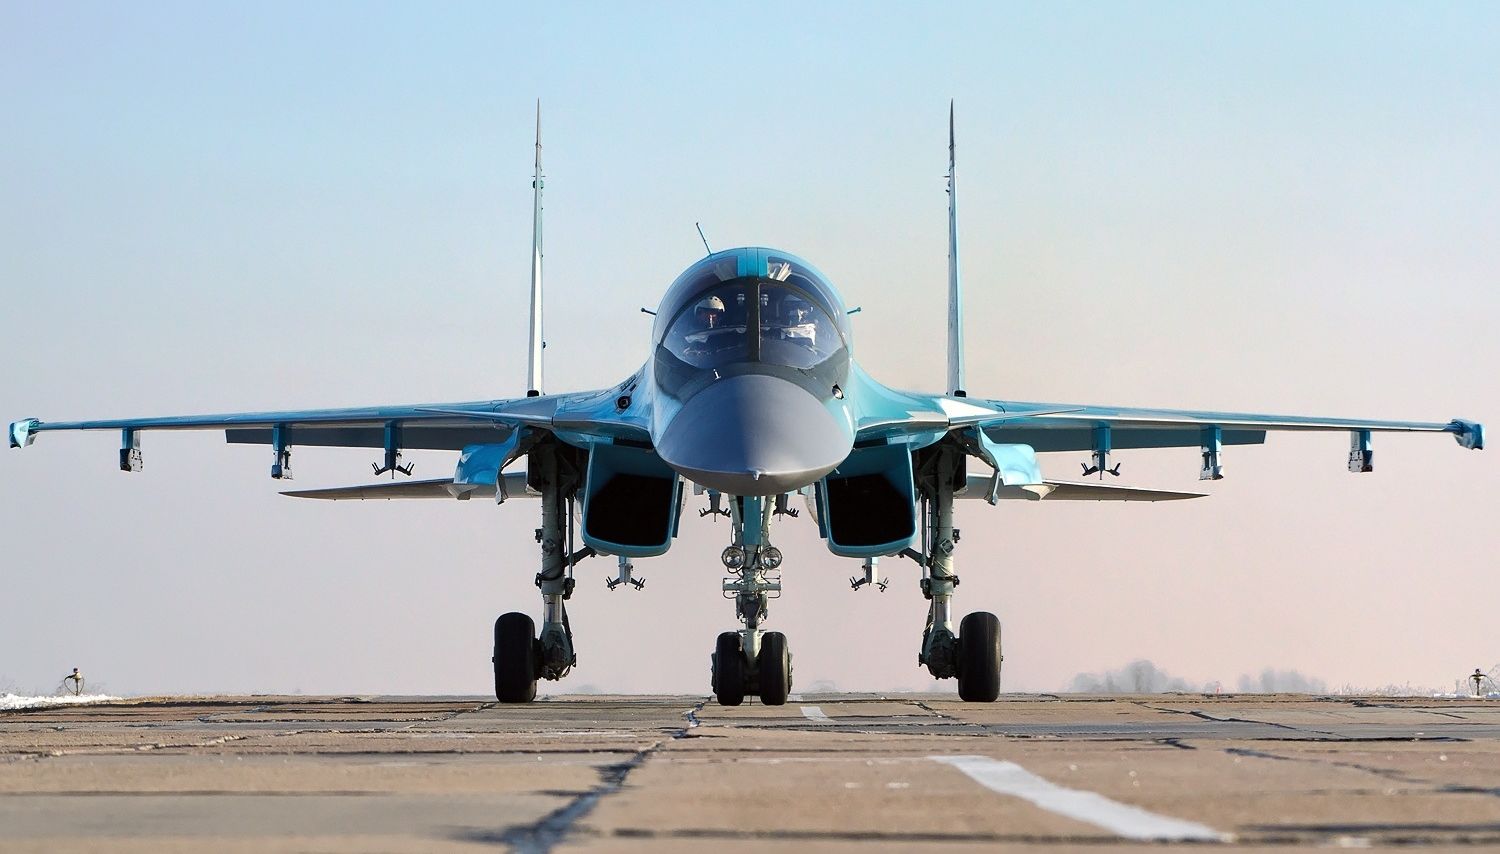 БПЛА в Курске повредили несколько самолетов Су-34 и уничтожили ЗРПК "Панцирь-С1" - СМИ